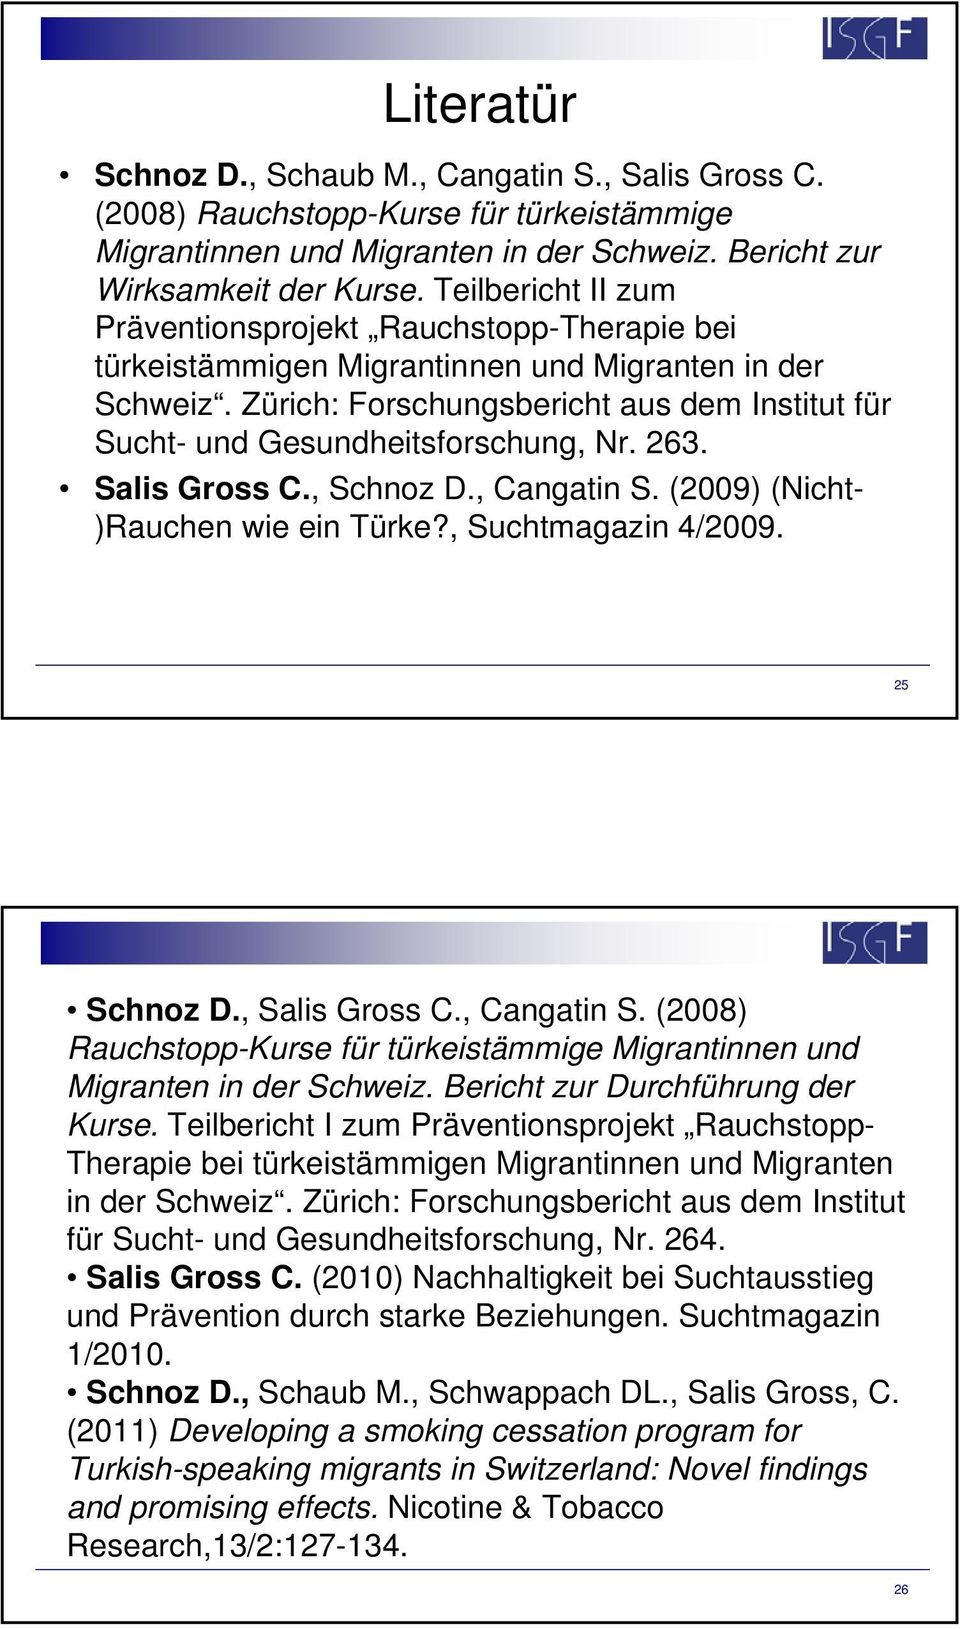 Zürich: Forschungsbericht aus dem Institut für Sucht- und Gesundheitsforschung, Nr. 263. Salis Gross C., Schnoz D., Cangatin S. (2009) (Nicht- )Rauchen wie ein Türke?, Suchtmagazin 4/2009.